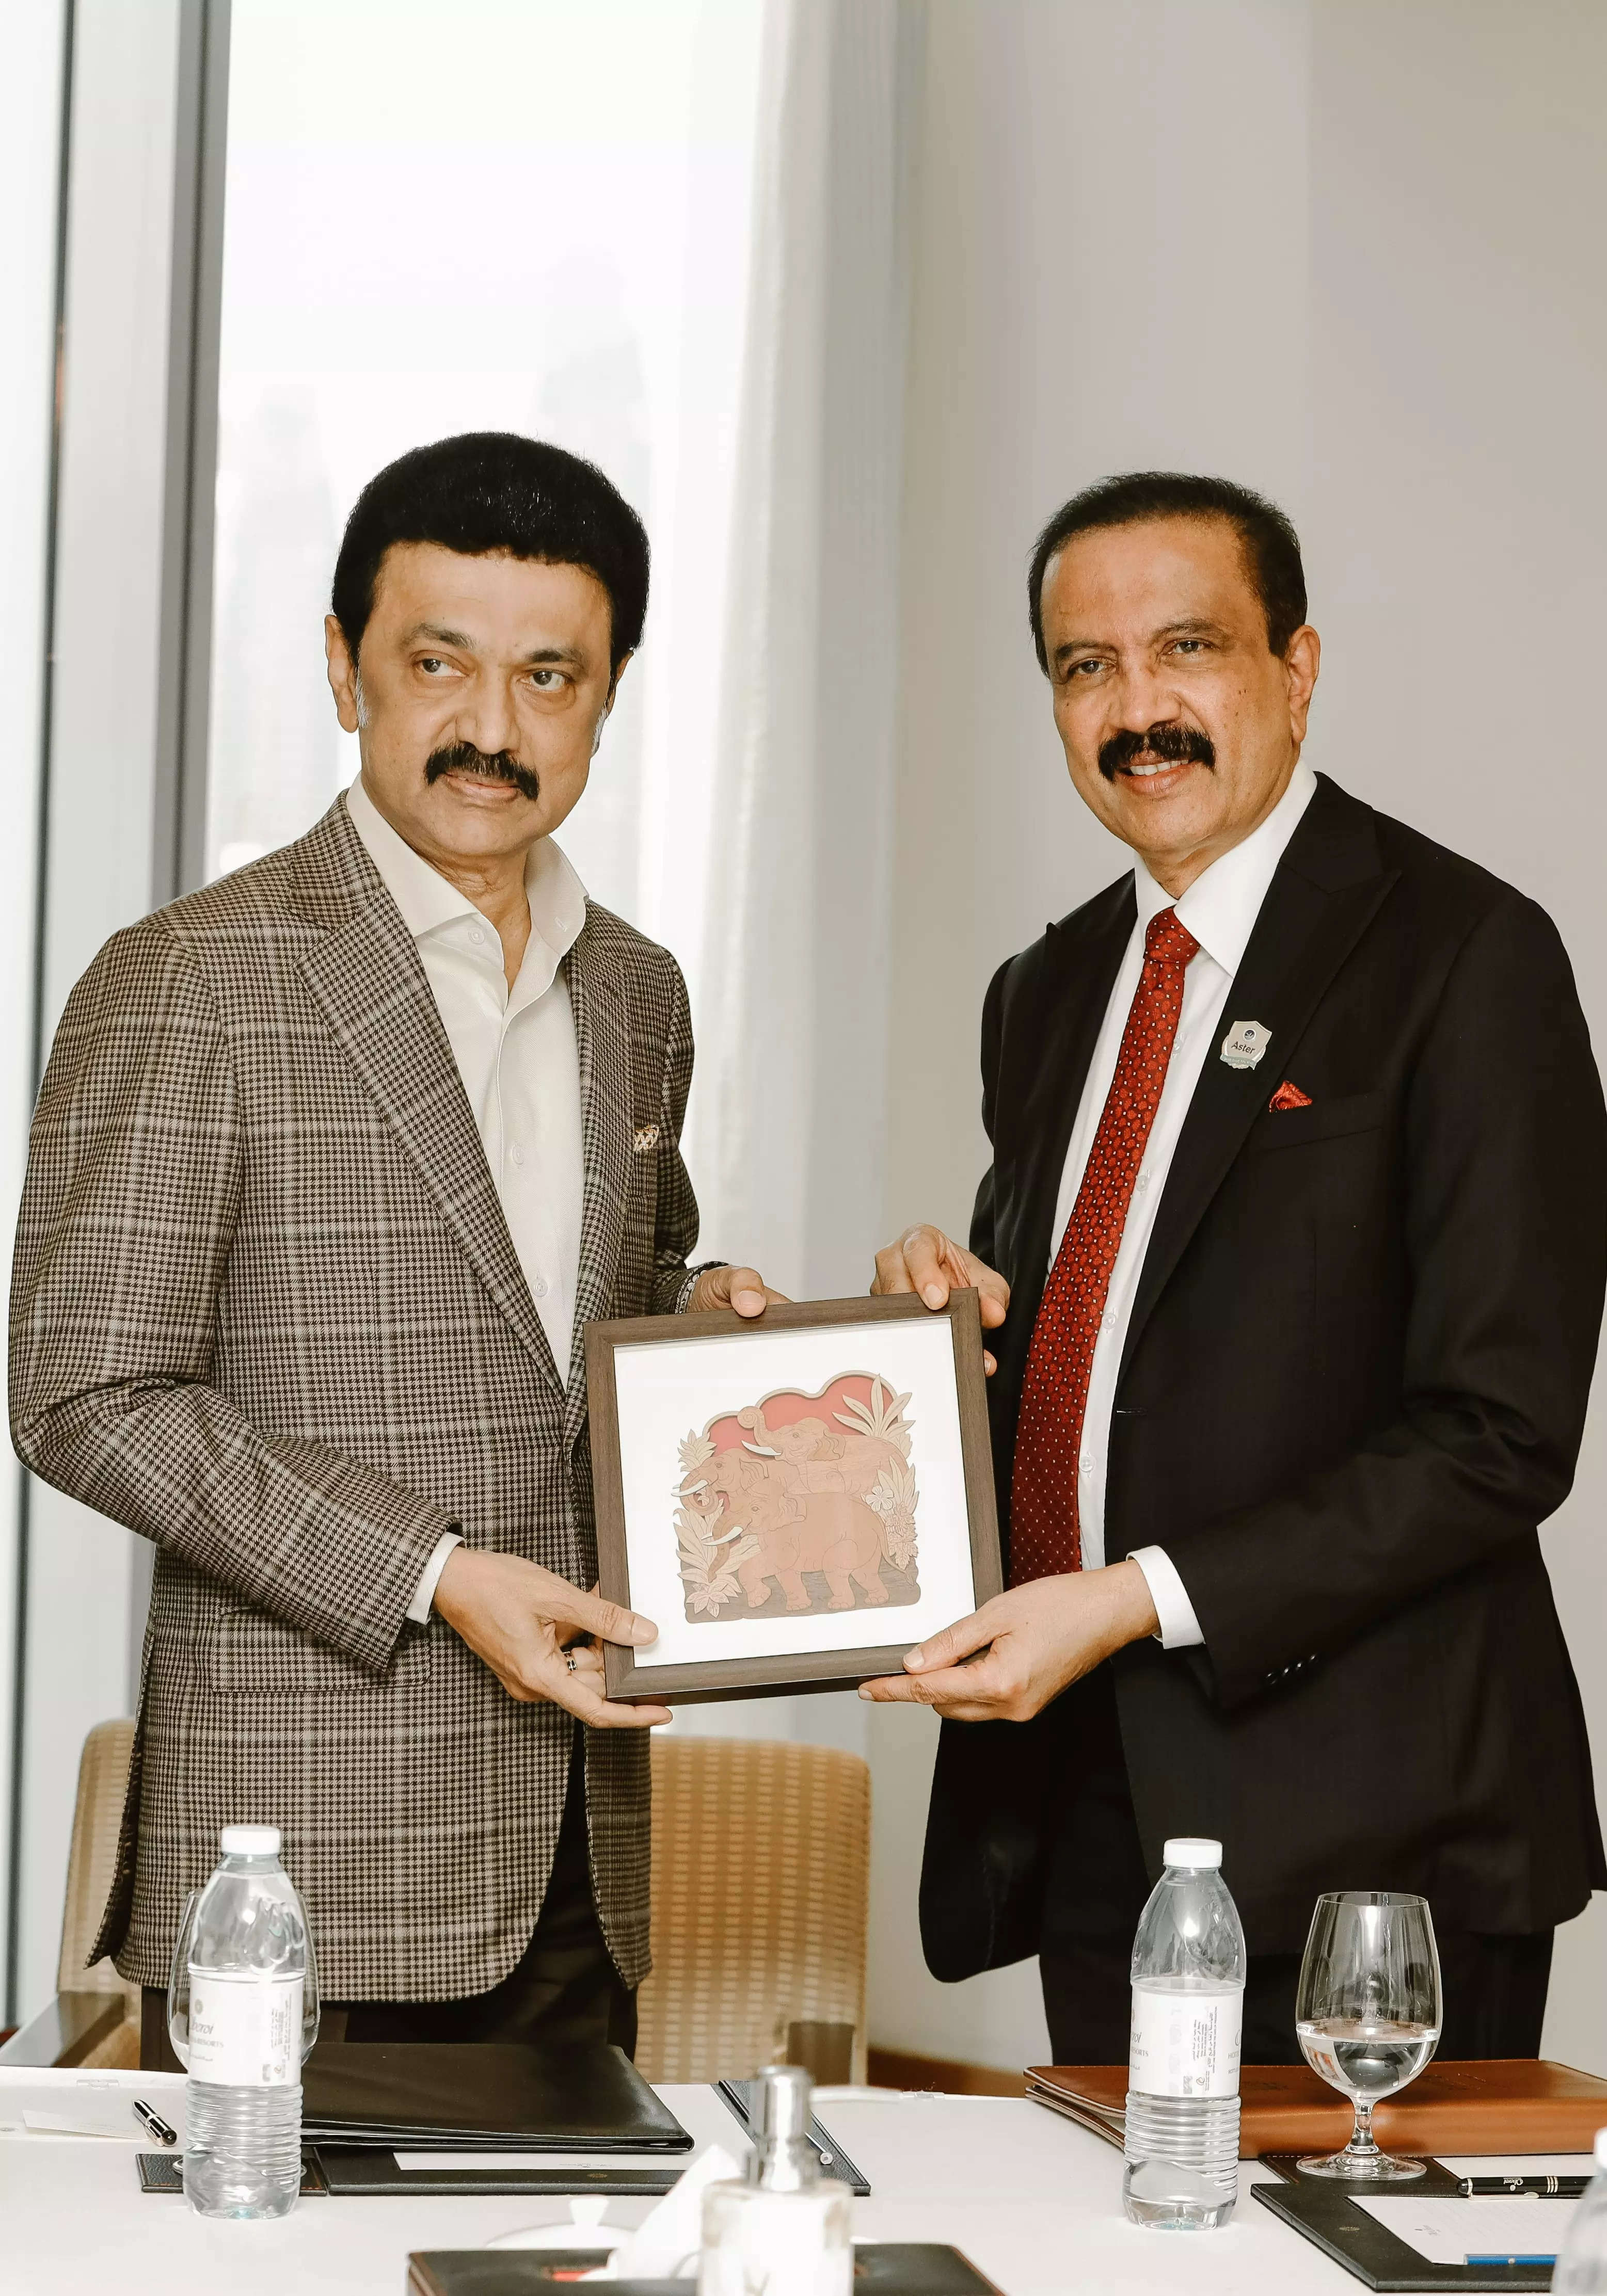 एस्टर डीएम हेल्थकेयर ने तमिलनाडु सरकार के साथ समझौता ज्ञापन पर हस्ताक्षर किए, राज्य में सुविधाओं का प्रस्ताव रखा